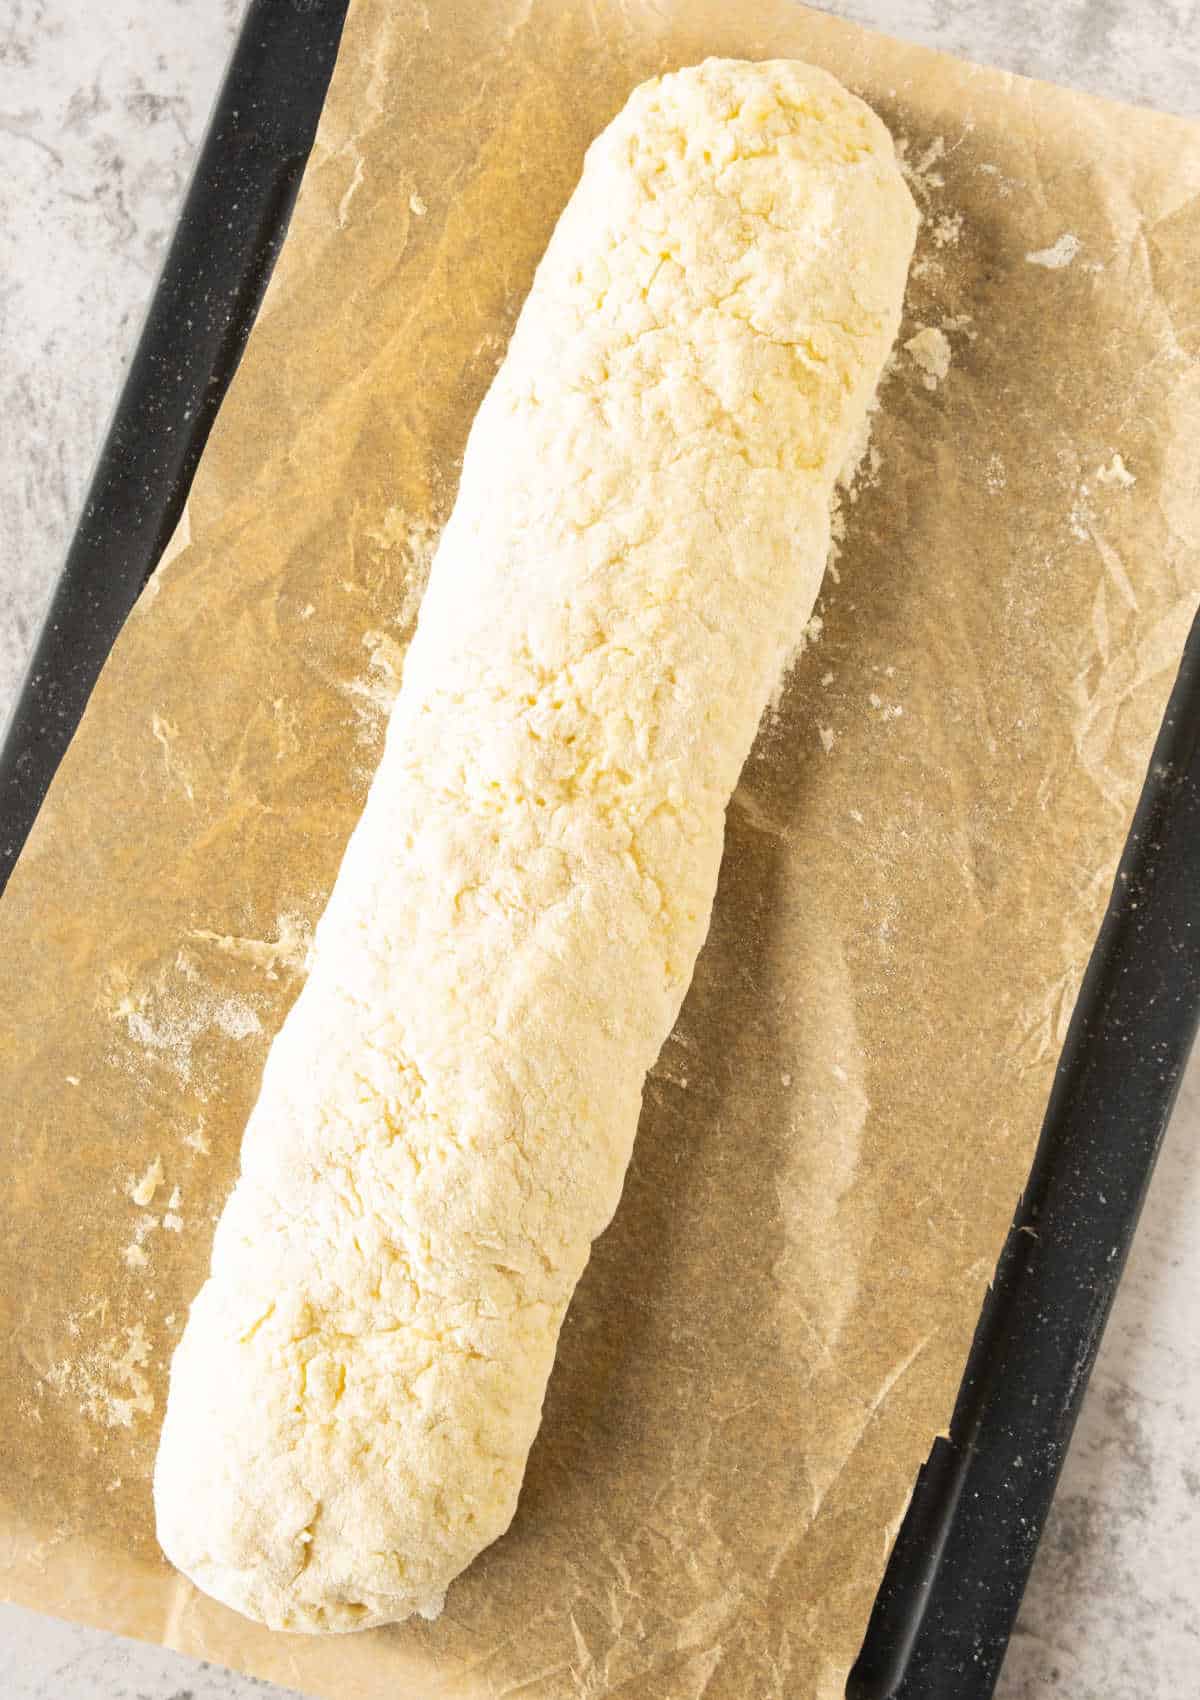 Log of potato gnocchi dough on beige parchment paper.